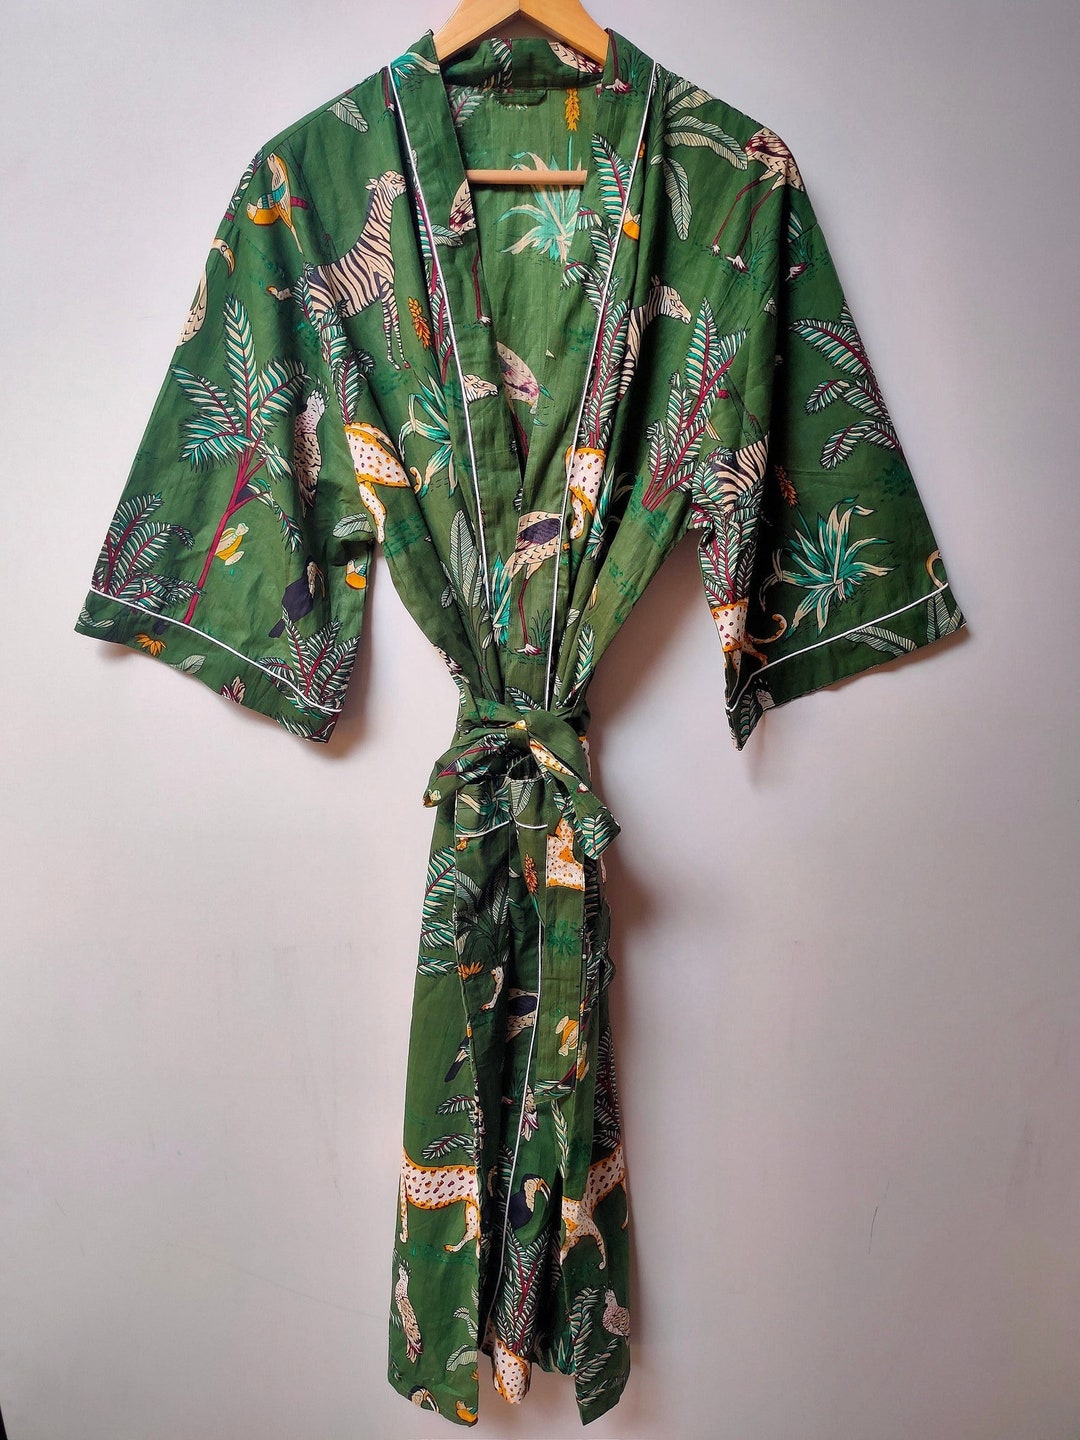 EXPRESS DELIVERY Cotton Kimono Robes,bird Print Kimono,soft and ...